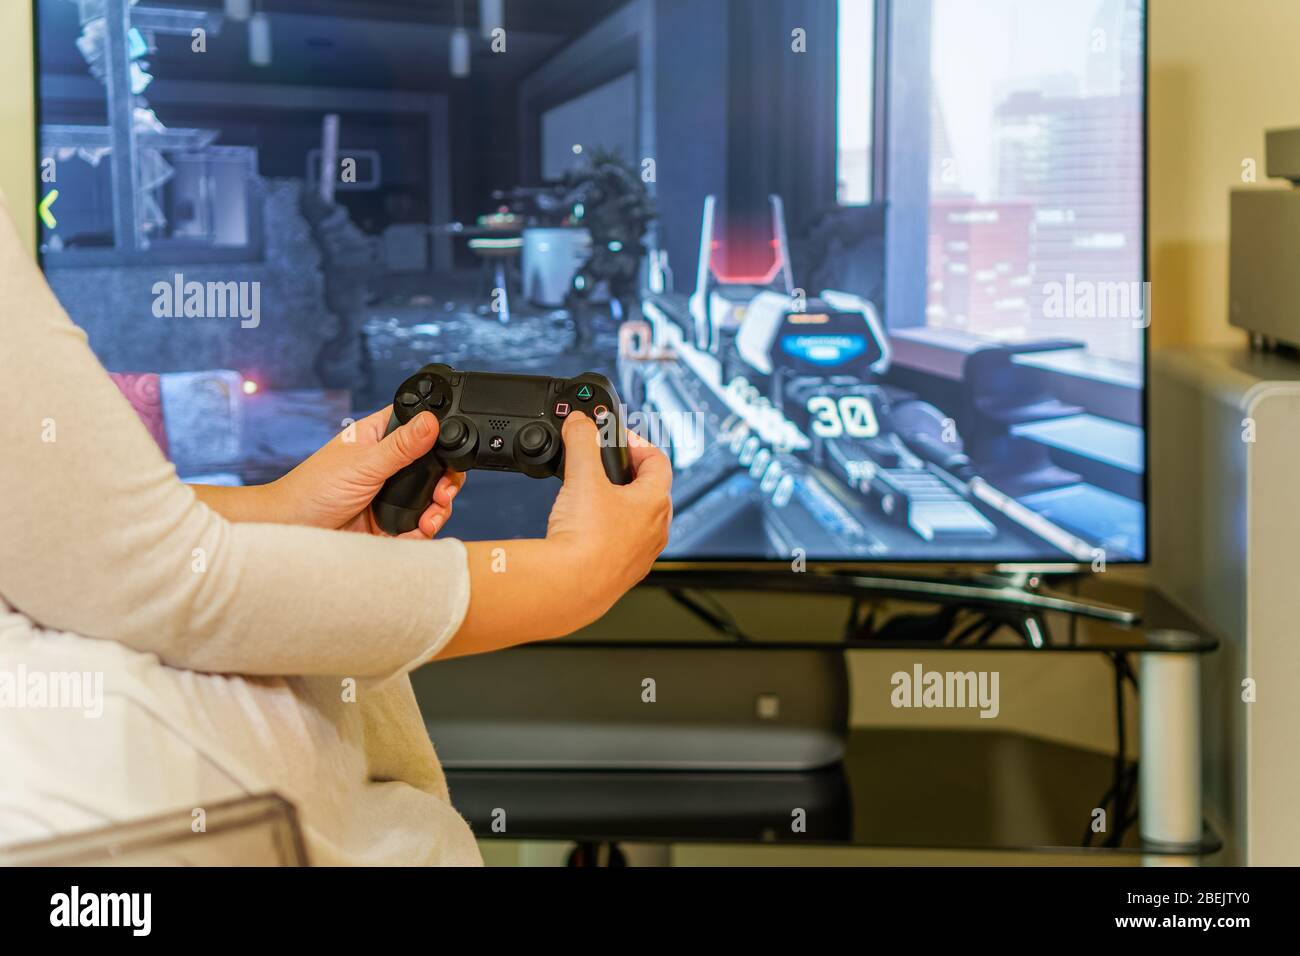 Jugar a PlayStation 4 en el televisor. Mujer sosteniendo el mando  inalámbrico DualShock 4 aprende a jugar a juegos de acción de PS4 en  pantalla grande, con el enfoque en las manos